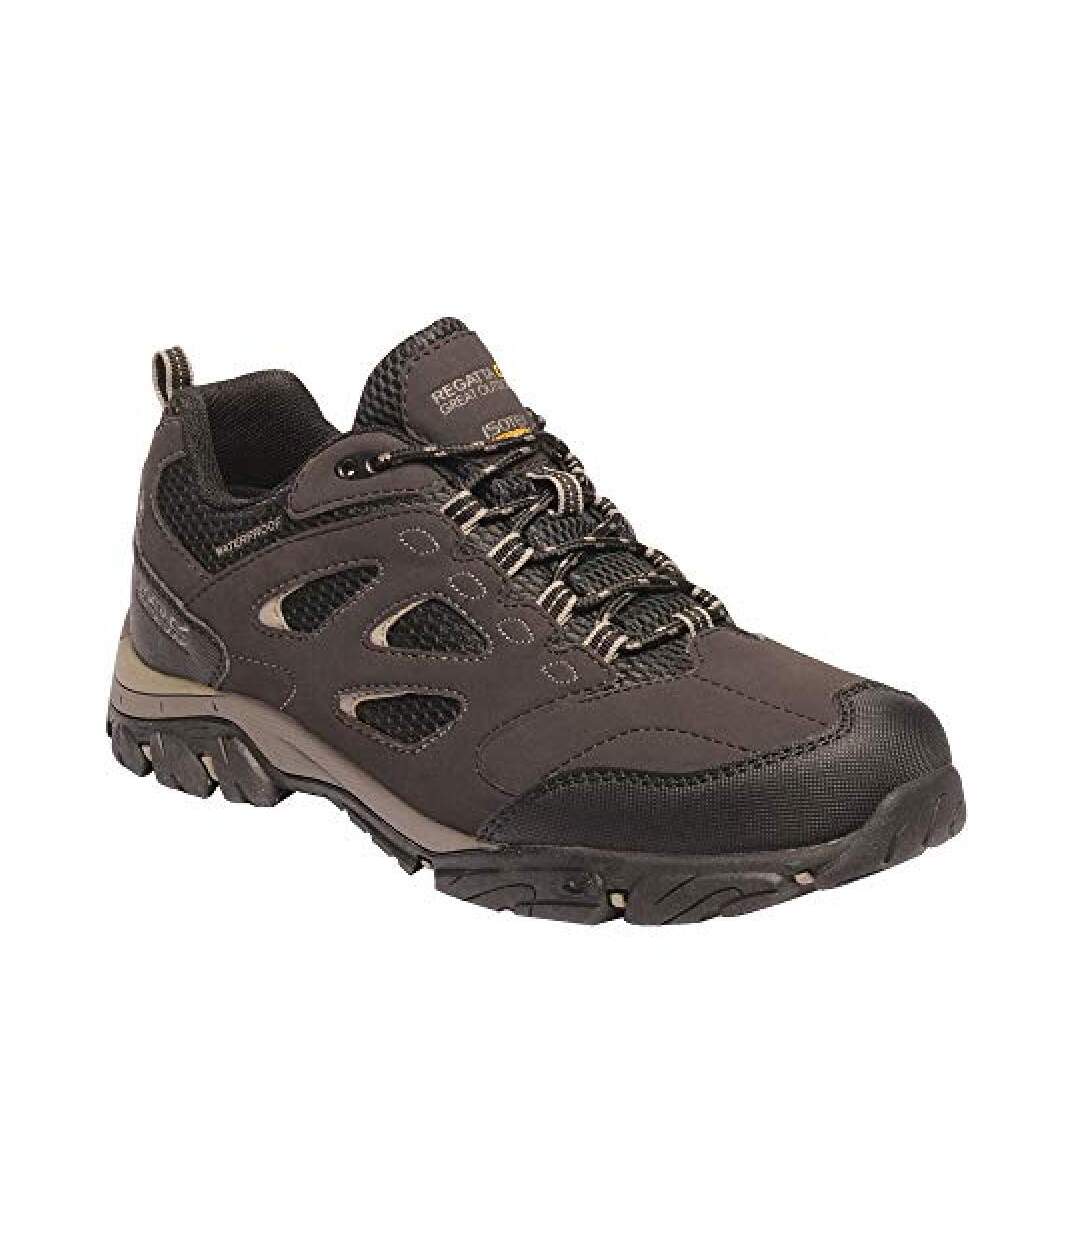 Regatta - Chaussures de randonnée HOLCOMBE - Homme (Marron foncé) - UTRG3659